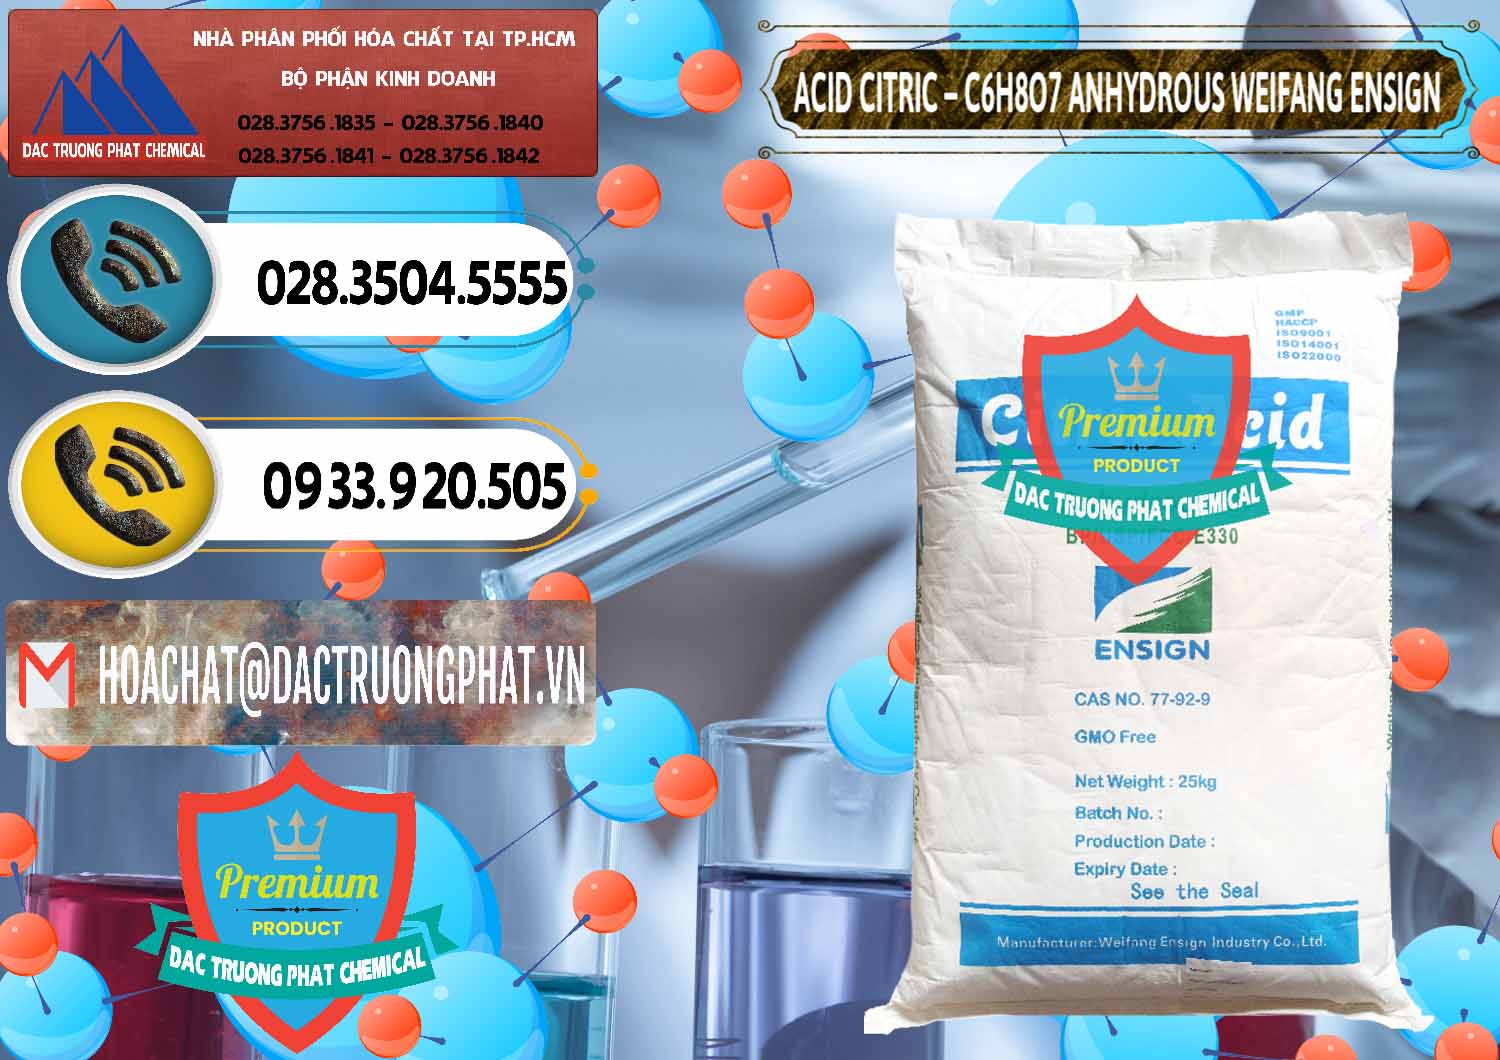 Chuyên bán & phân phối Acid Citric - Axit Citric Khan Anhydrous Weifang Trung Quốc China - 0008 - Nơi chuyên cung cấp - bán hóa chất tại TP.HCM - hoachatdetnhuom.vn